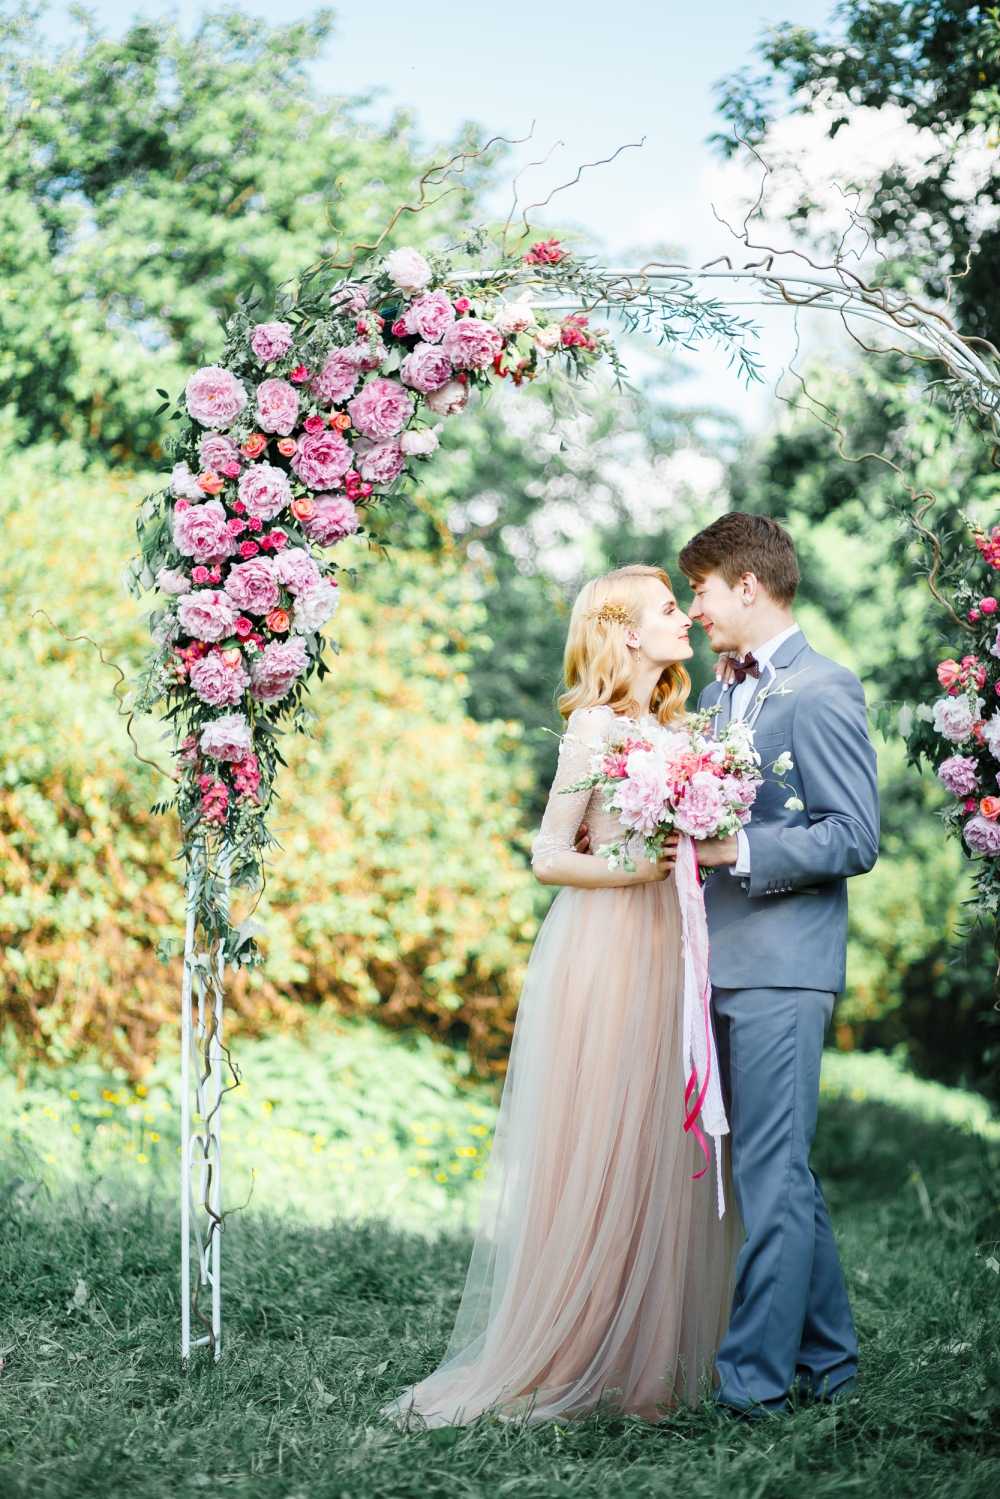 Арка, украшенная живыми цветами, — классика свадебного декора